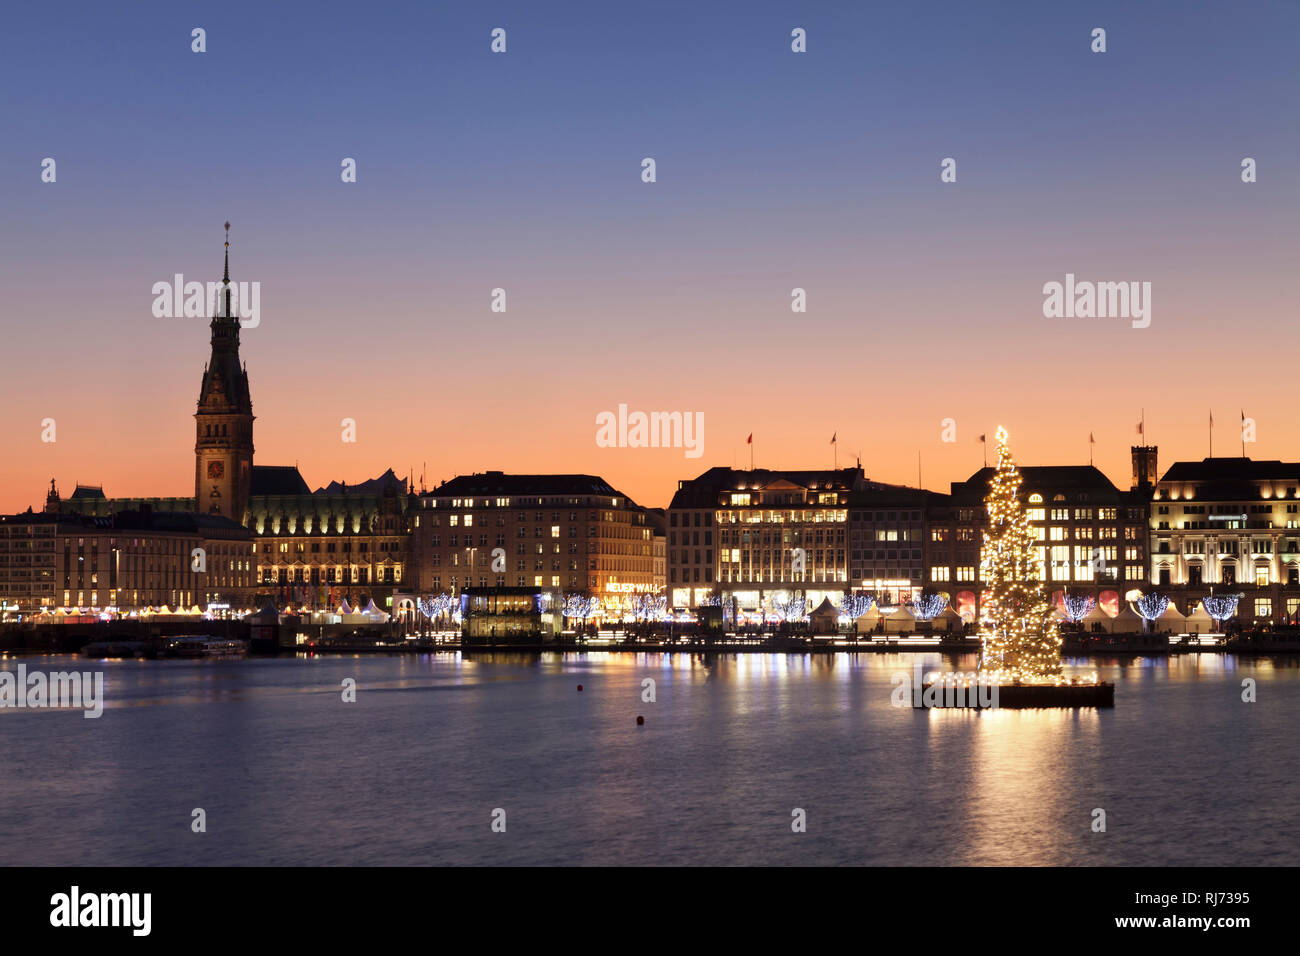 Blick über die Binnenalster zum Weihnachtsmarkt am Jungfernstieg und dem Rathaus, Amburgo, Deutschland Foto Stock